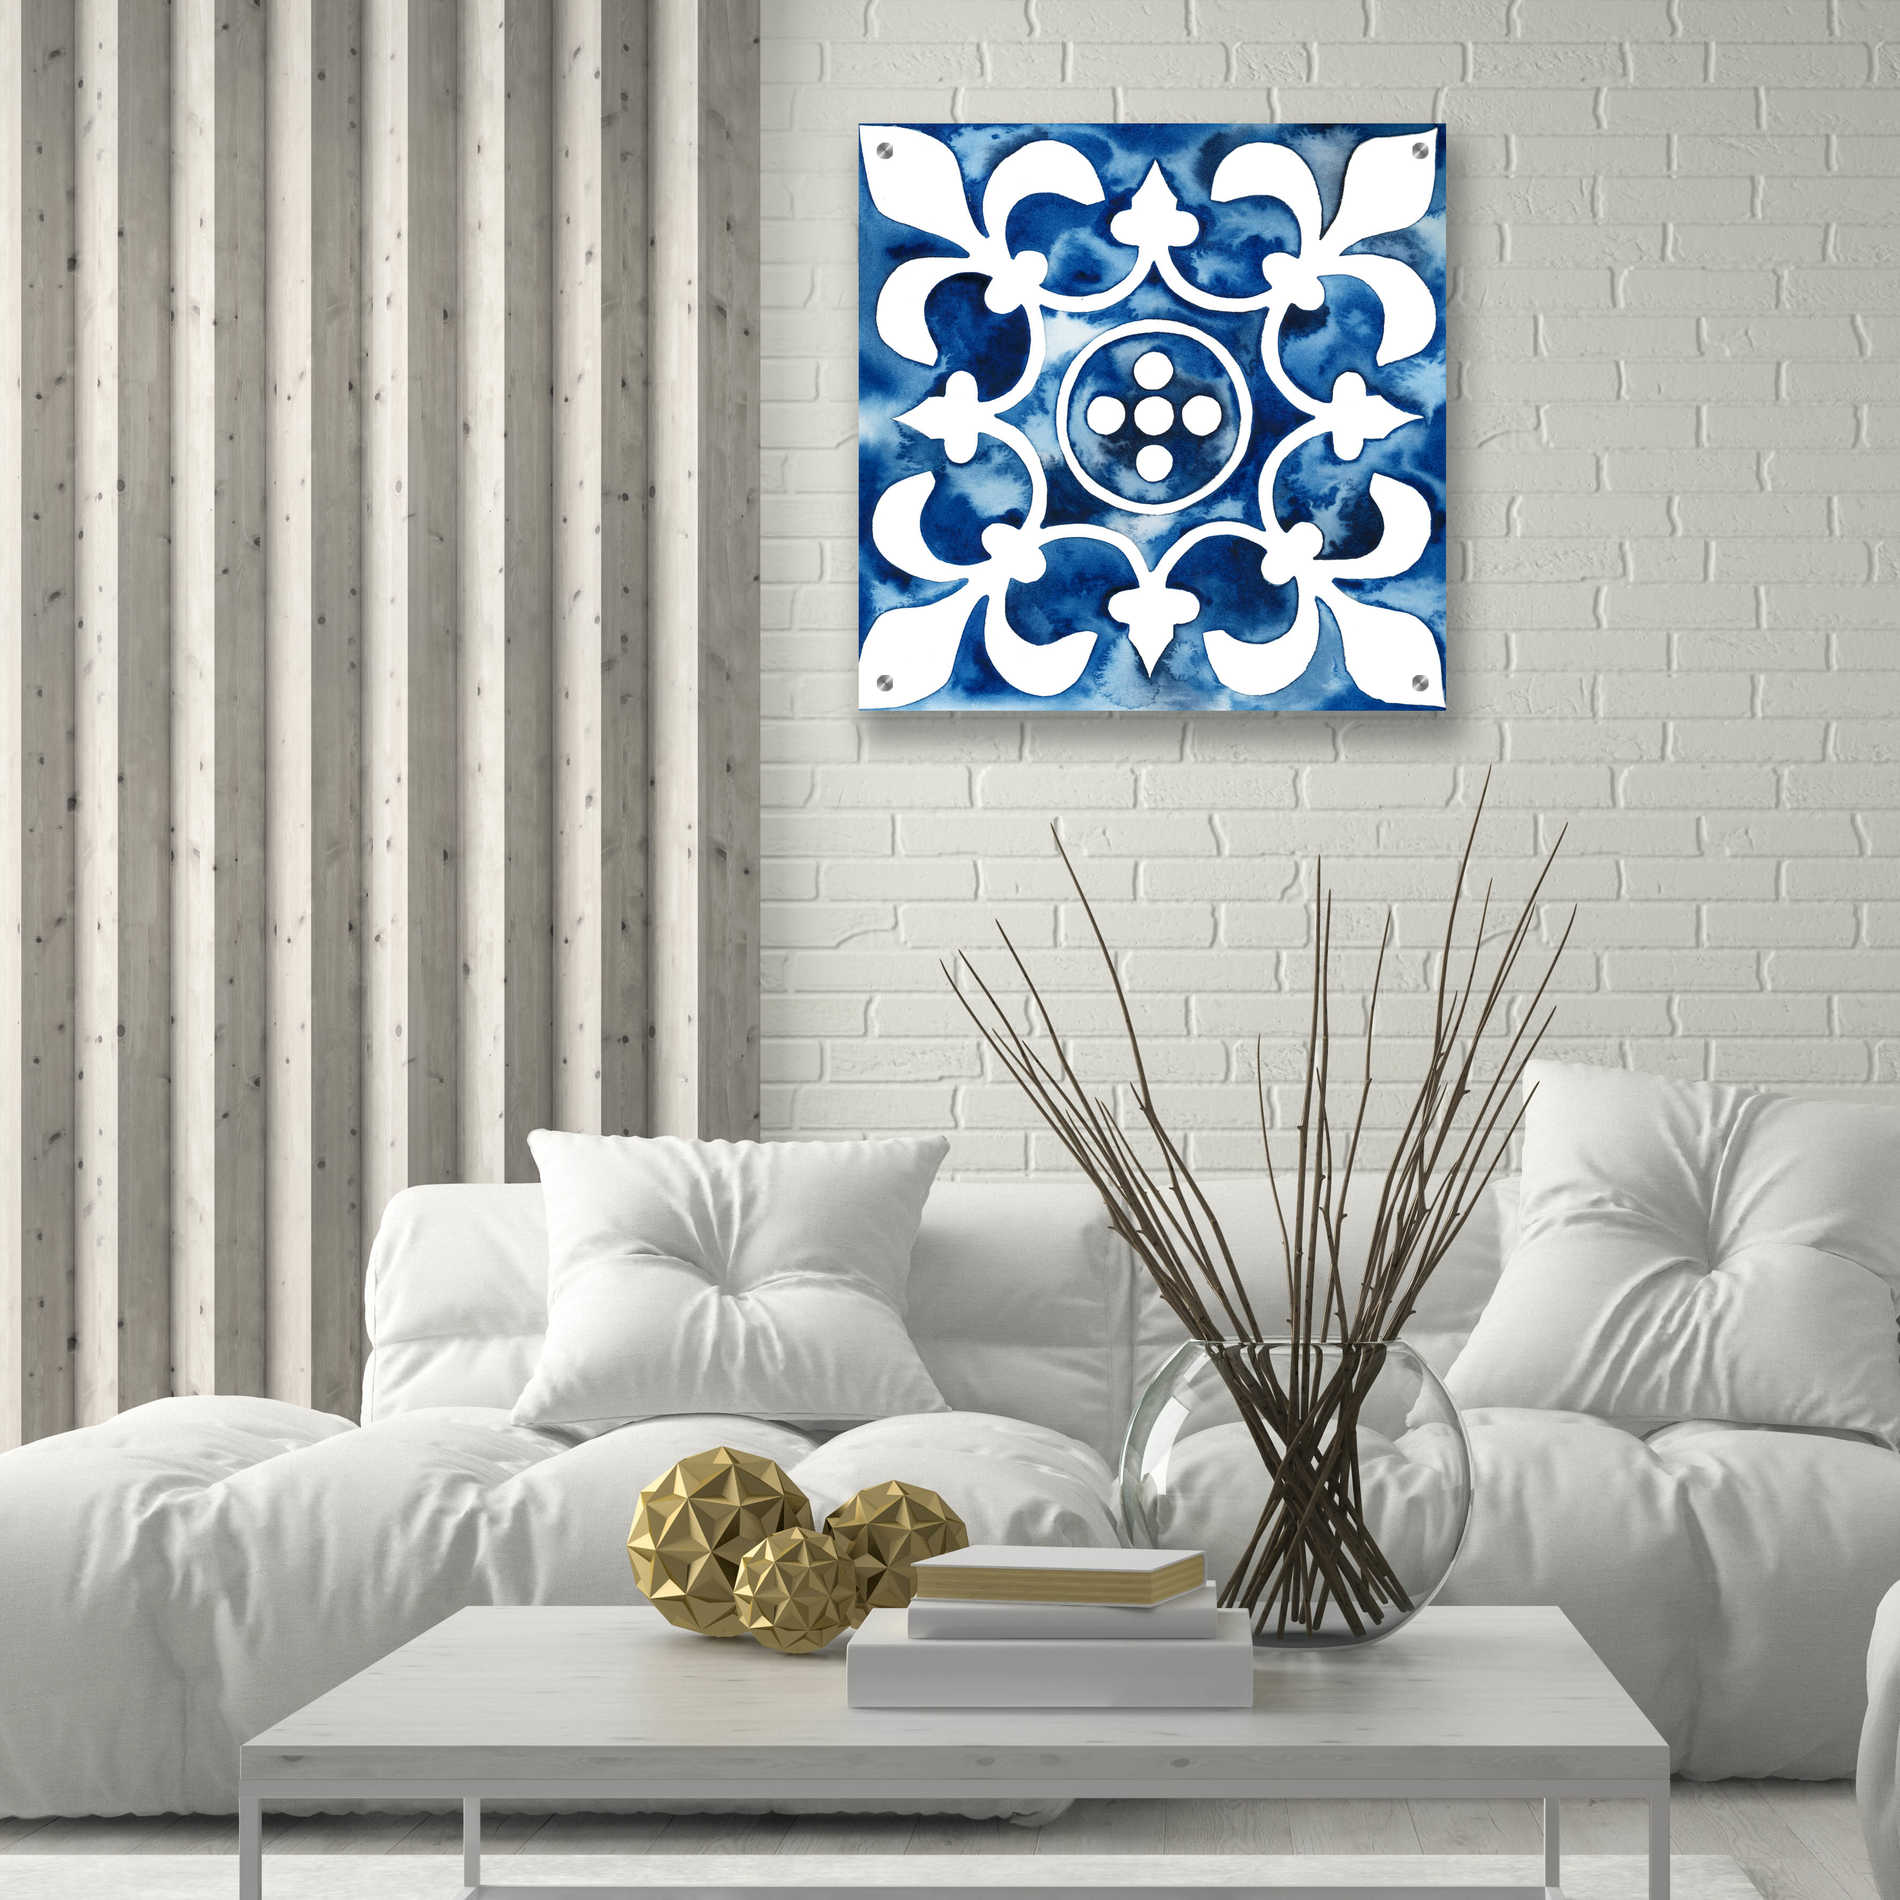 Epic Art 'Cobalt Tile III' by Grace Popp, Acrylic Glass Wall Art,24x24